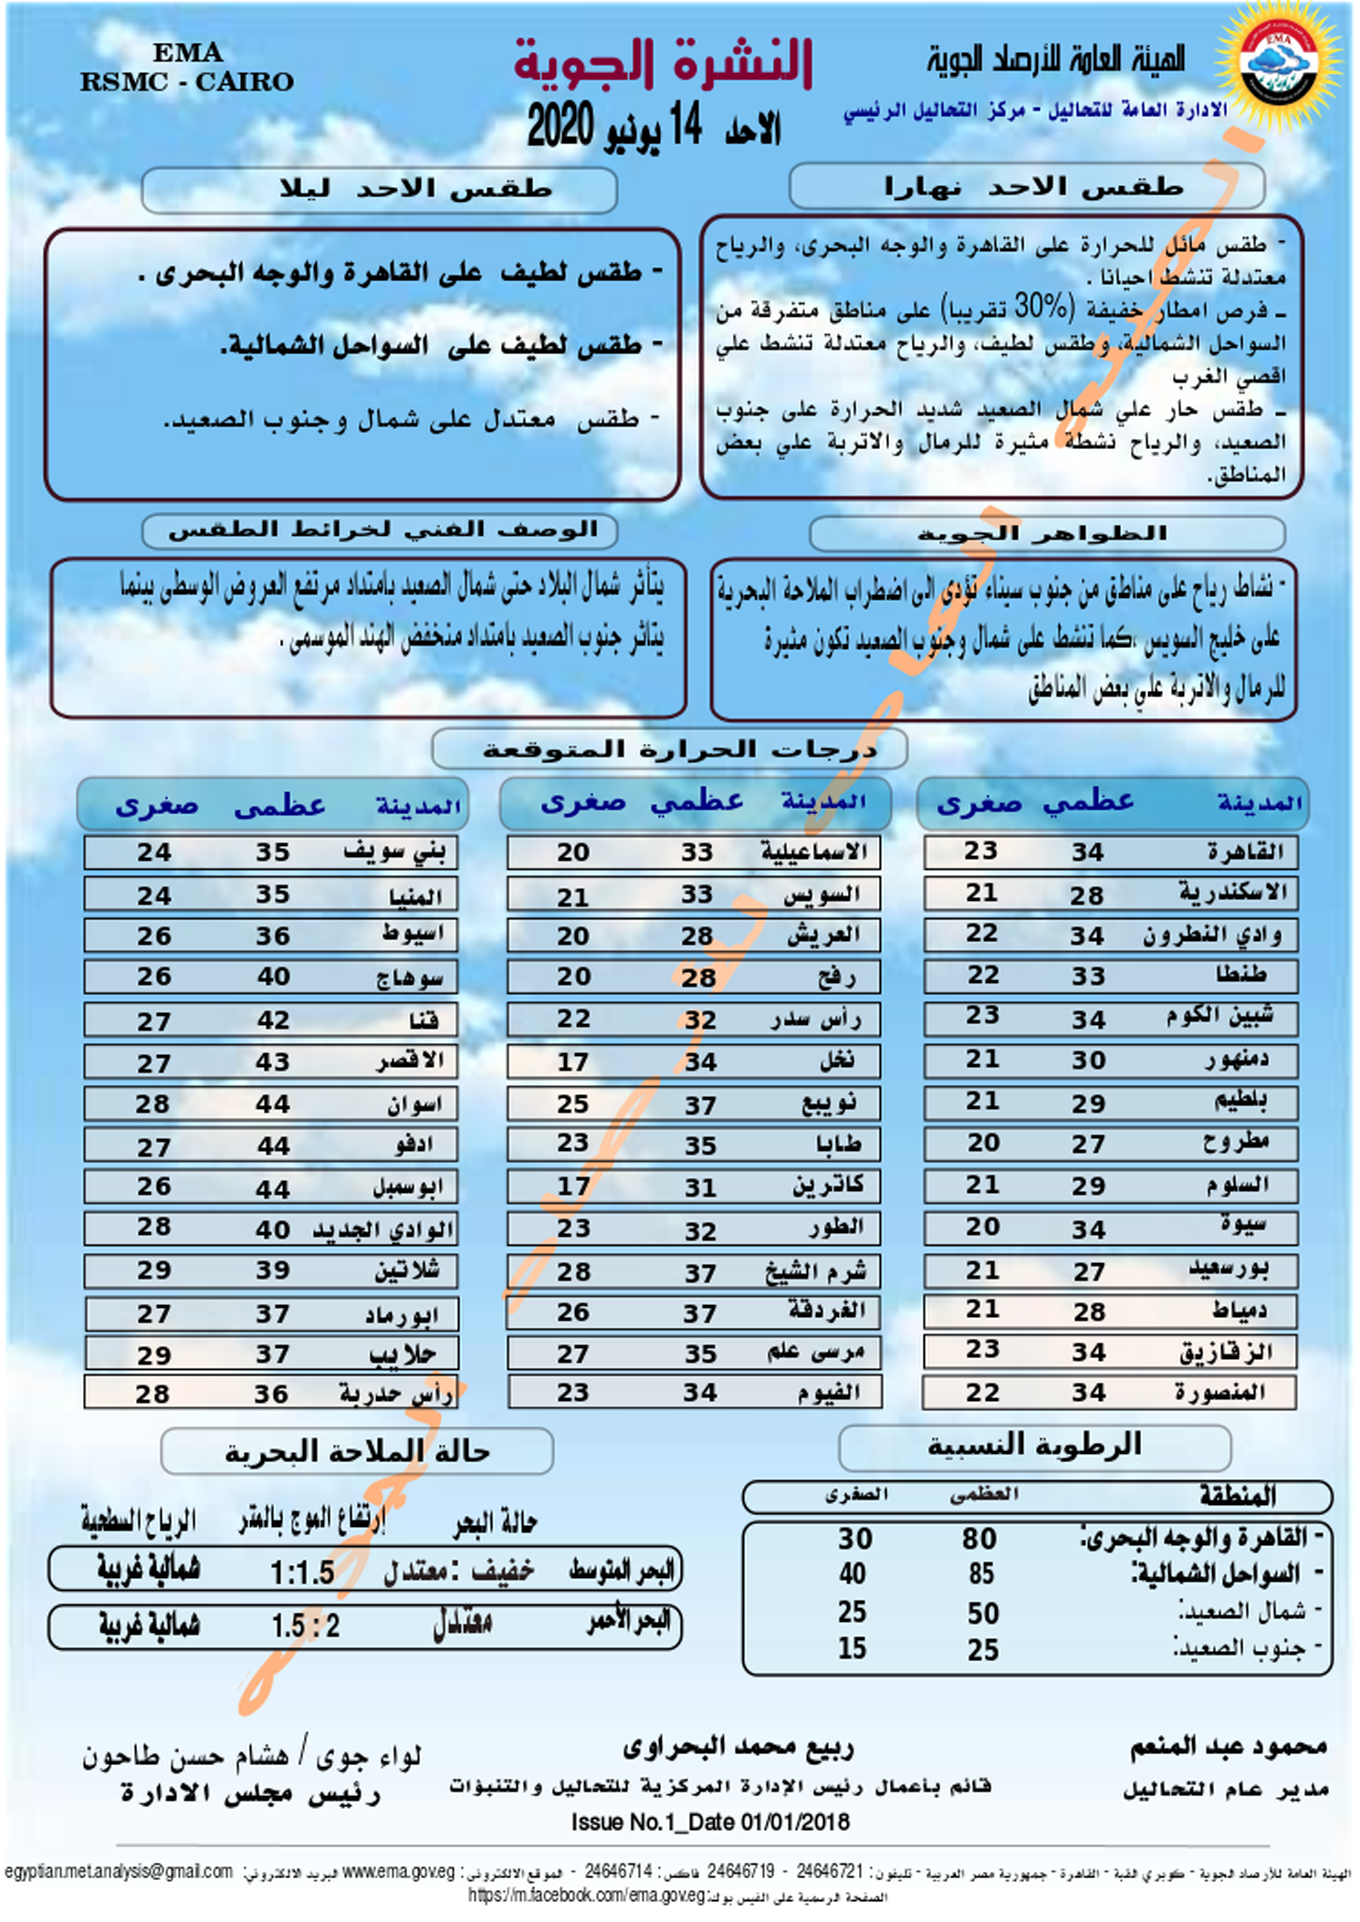 الأرصاد الجوية تعلن رسمياً عن حالة الطقس في مصر لمدة 6 ...